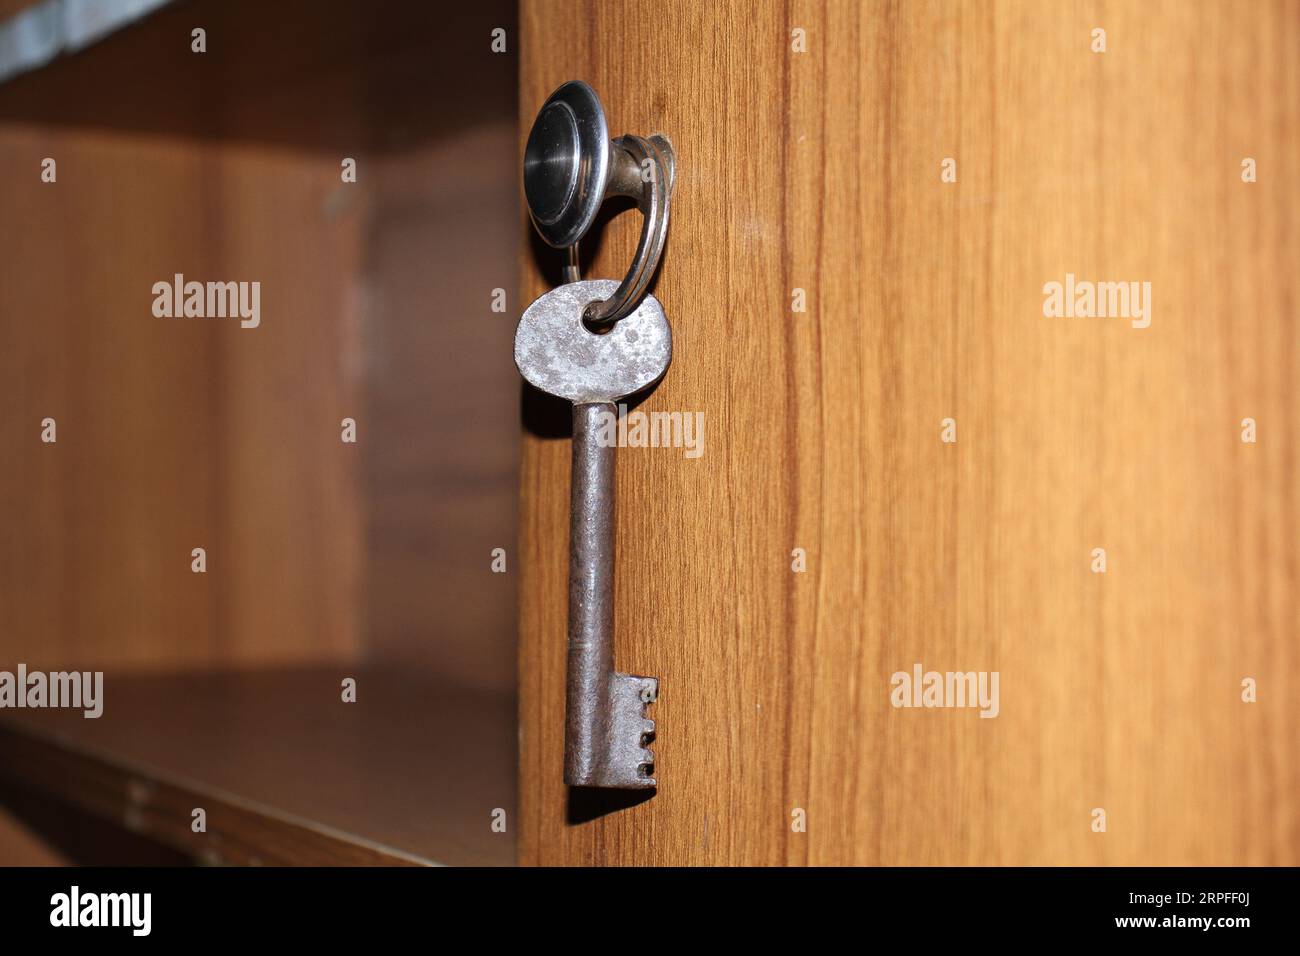 A key on a keyring. Stock Photo